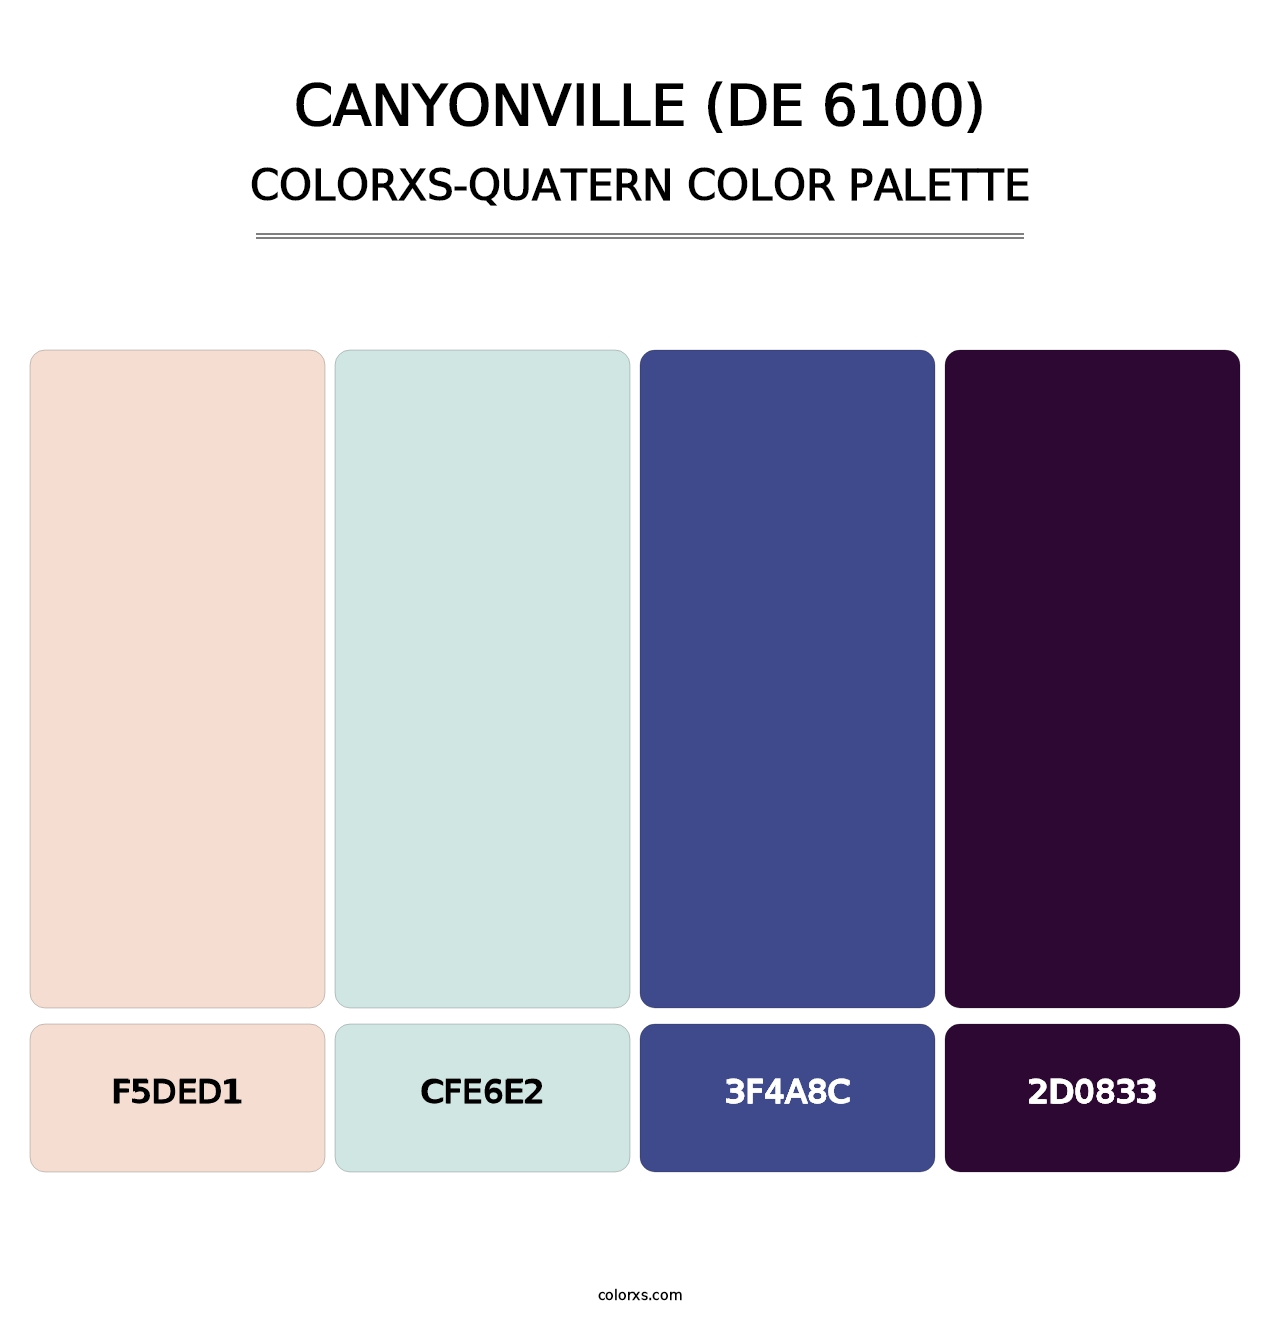 Canyonville (DE 6100) - Colorxs Quatern Palette